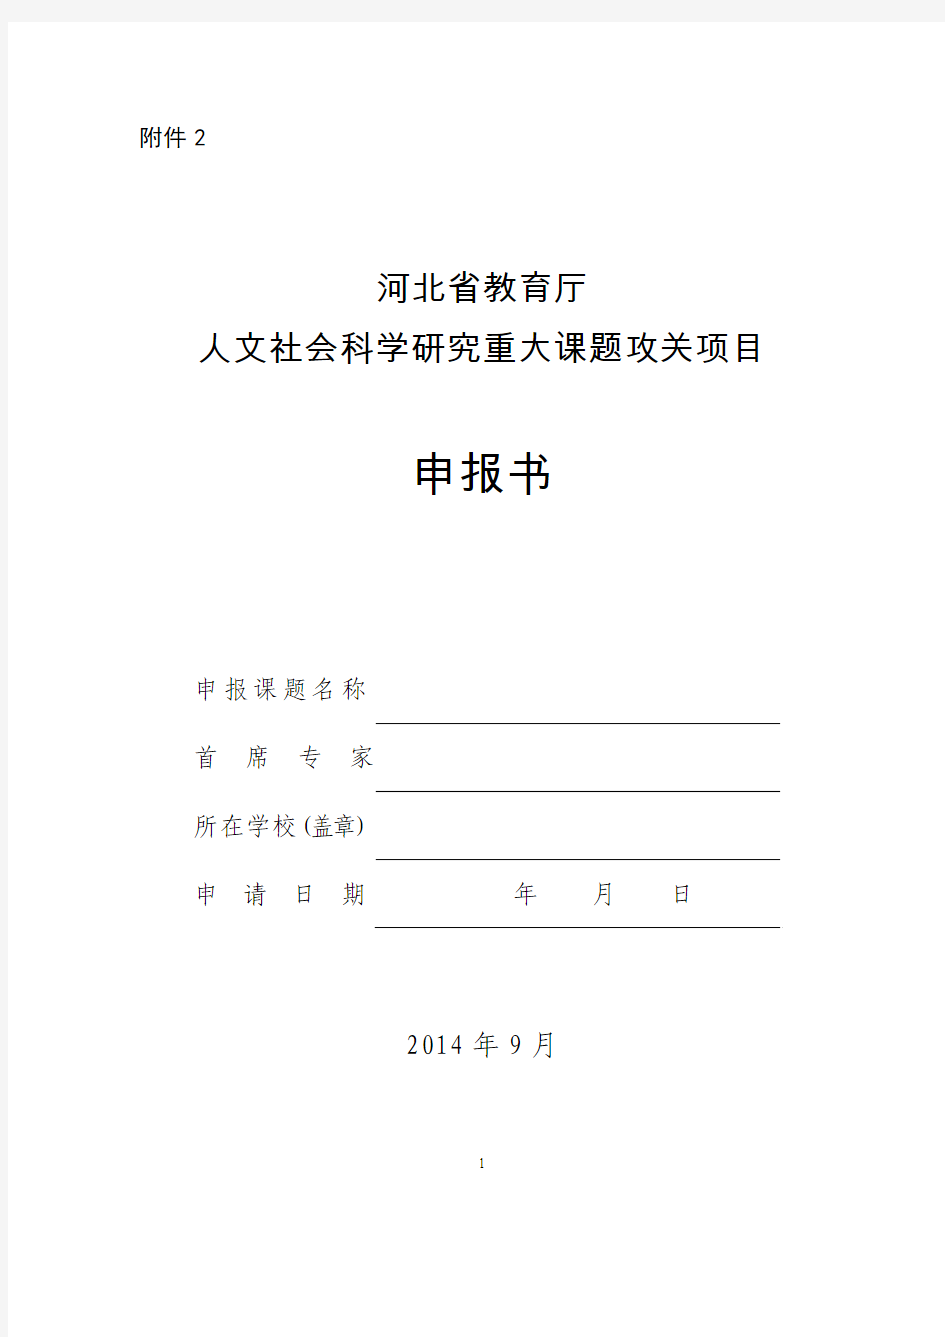 河北省教育厅申请书模板